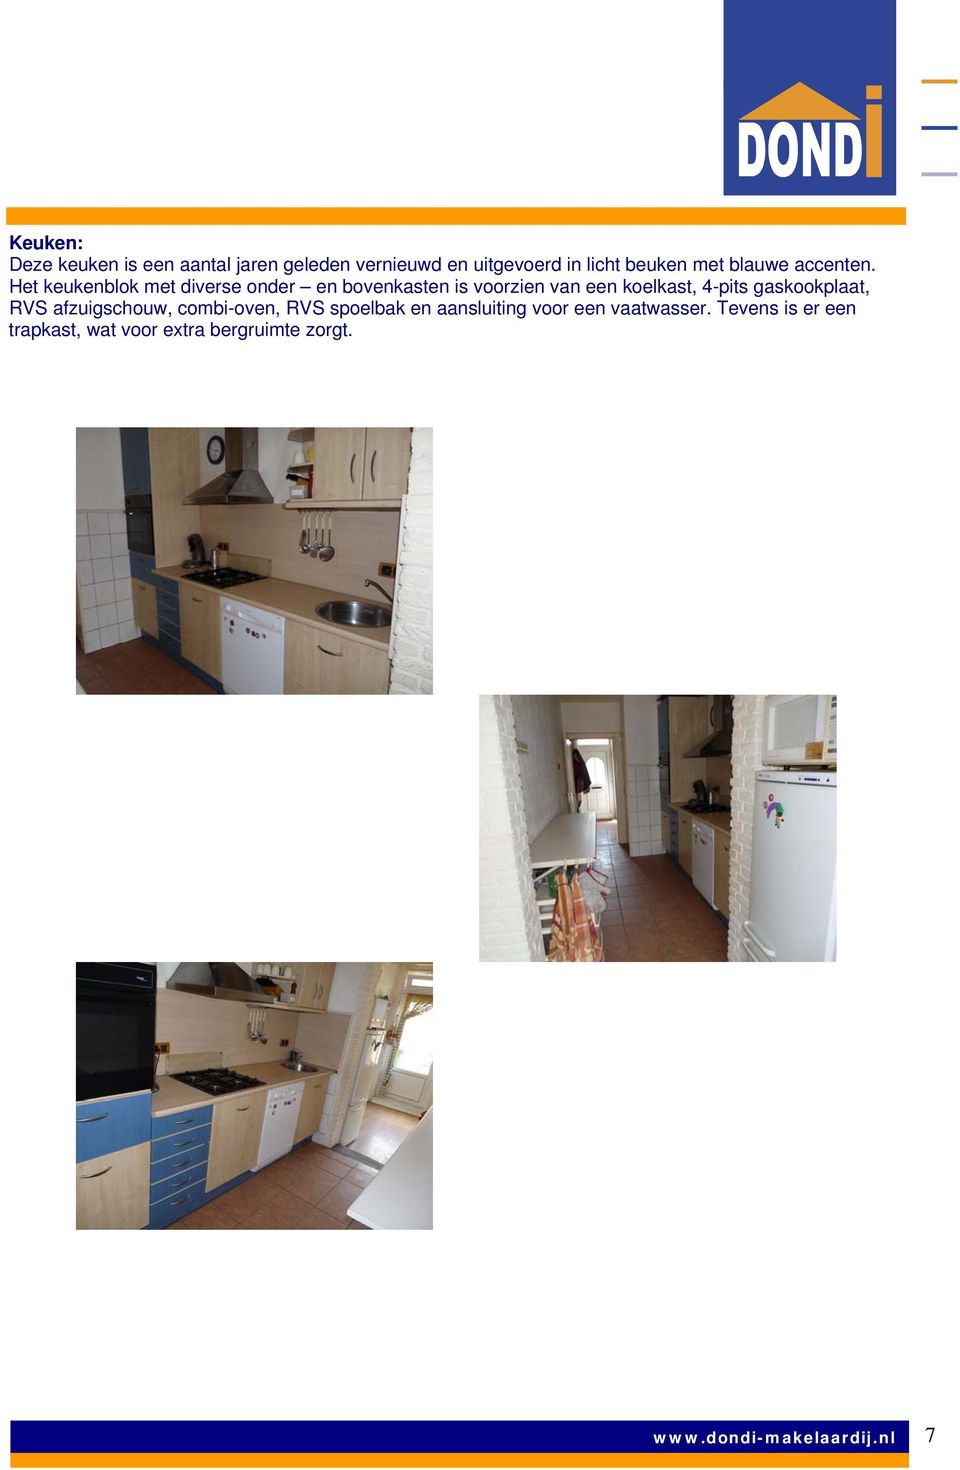 Het keukenblok met diverse onder en bovenkasten is voorzien van een koelkast, 4-pits